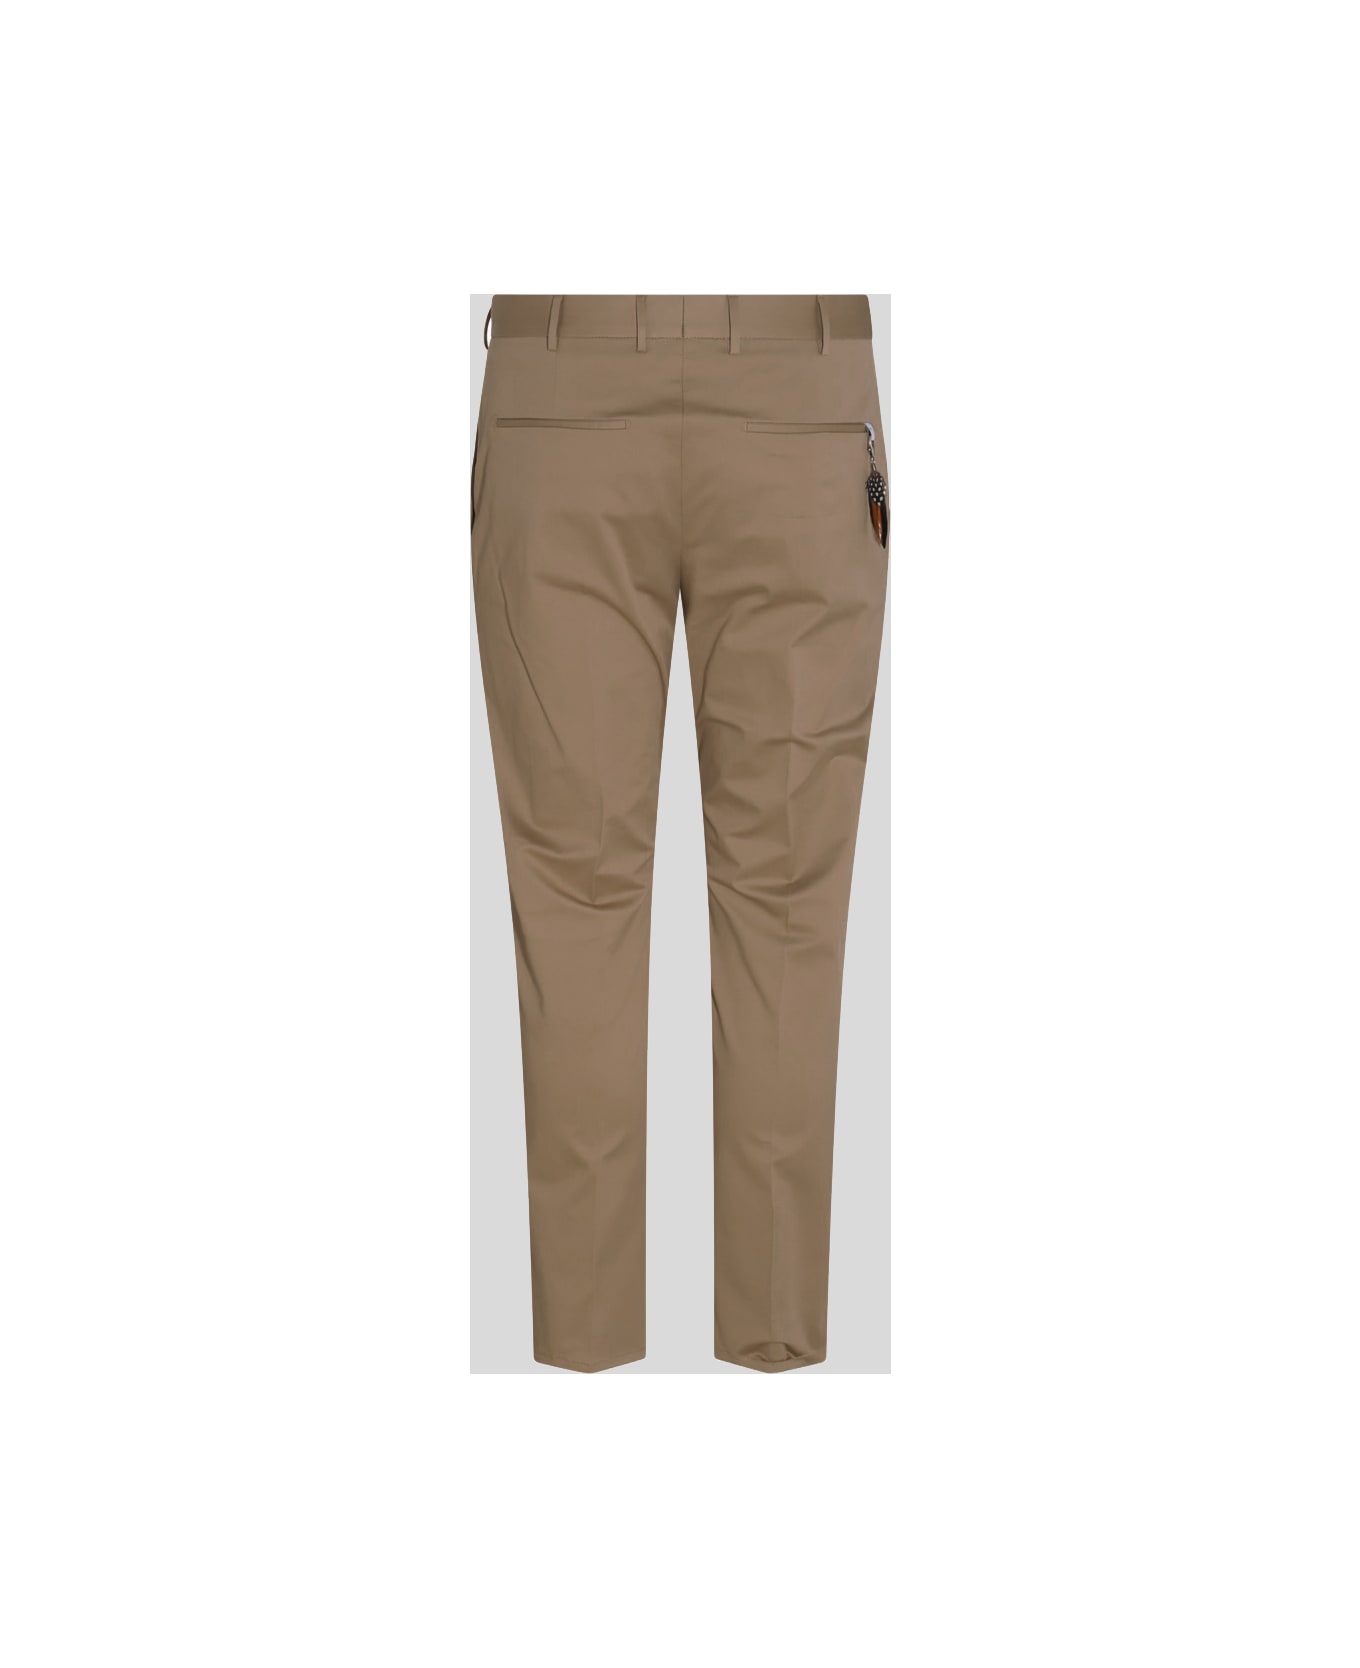 PT01 Beige Cotton Pants - Brown